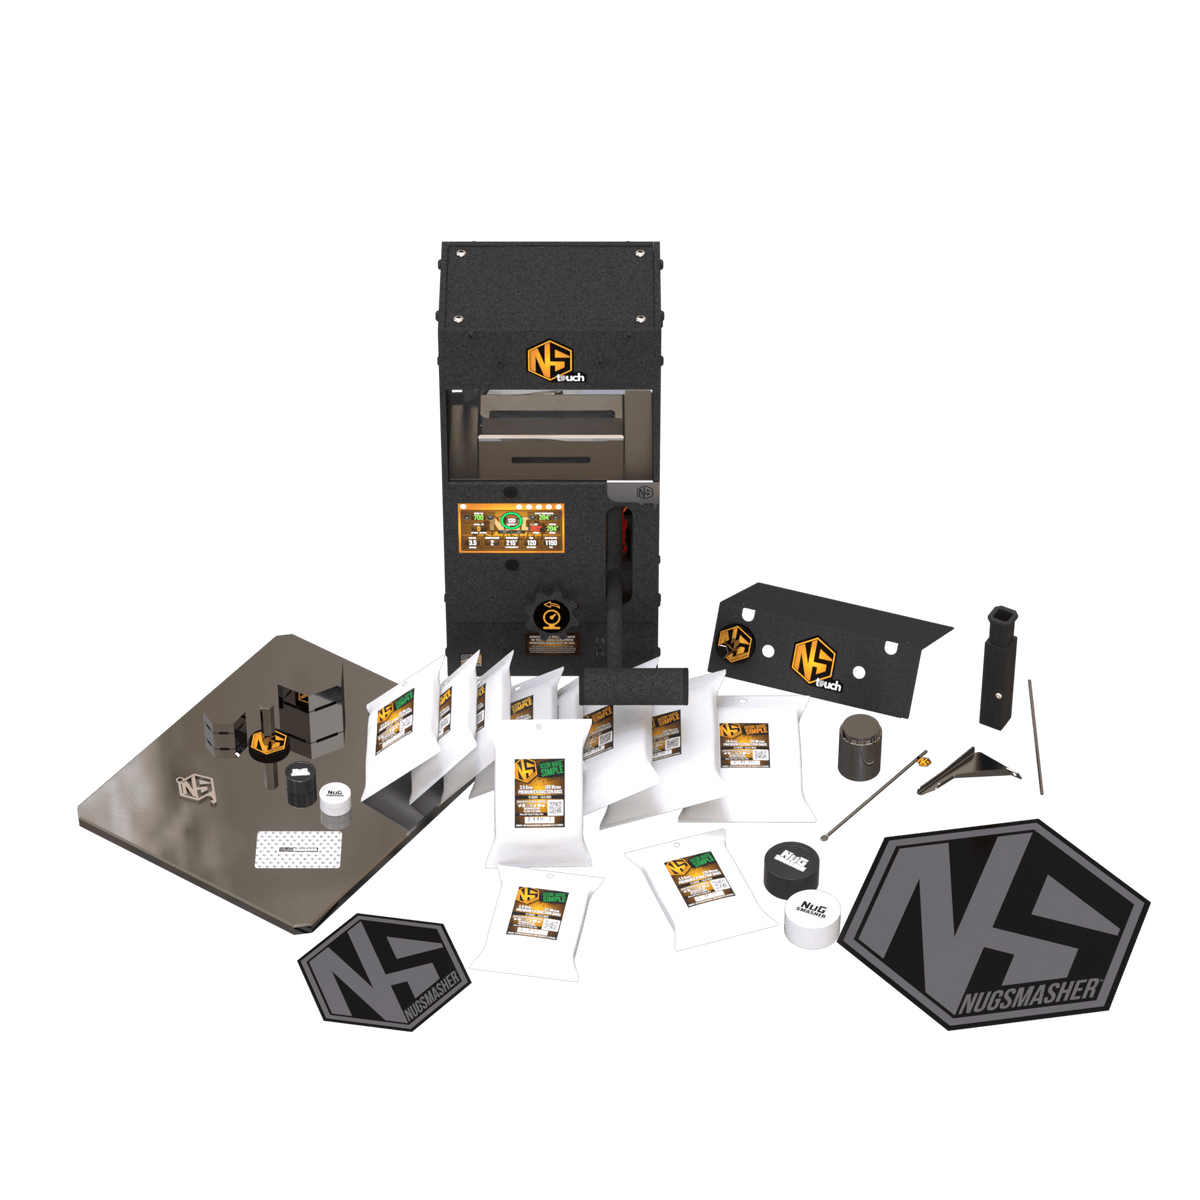 NugSmasher NugSmasher Touch 12 Ton Rosin Press Essentials Bundle